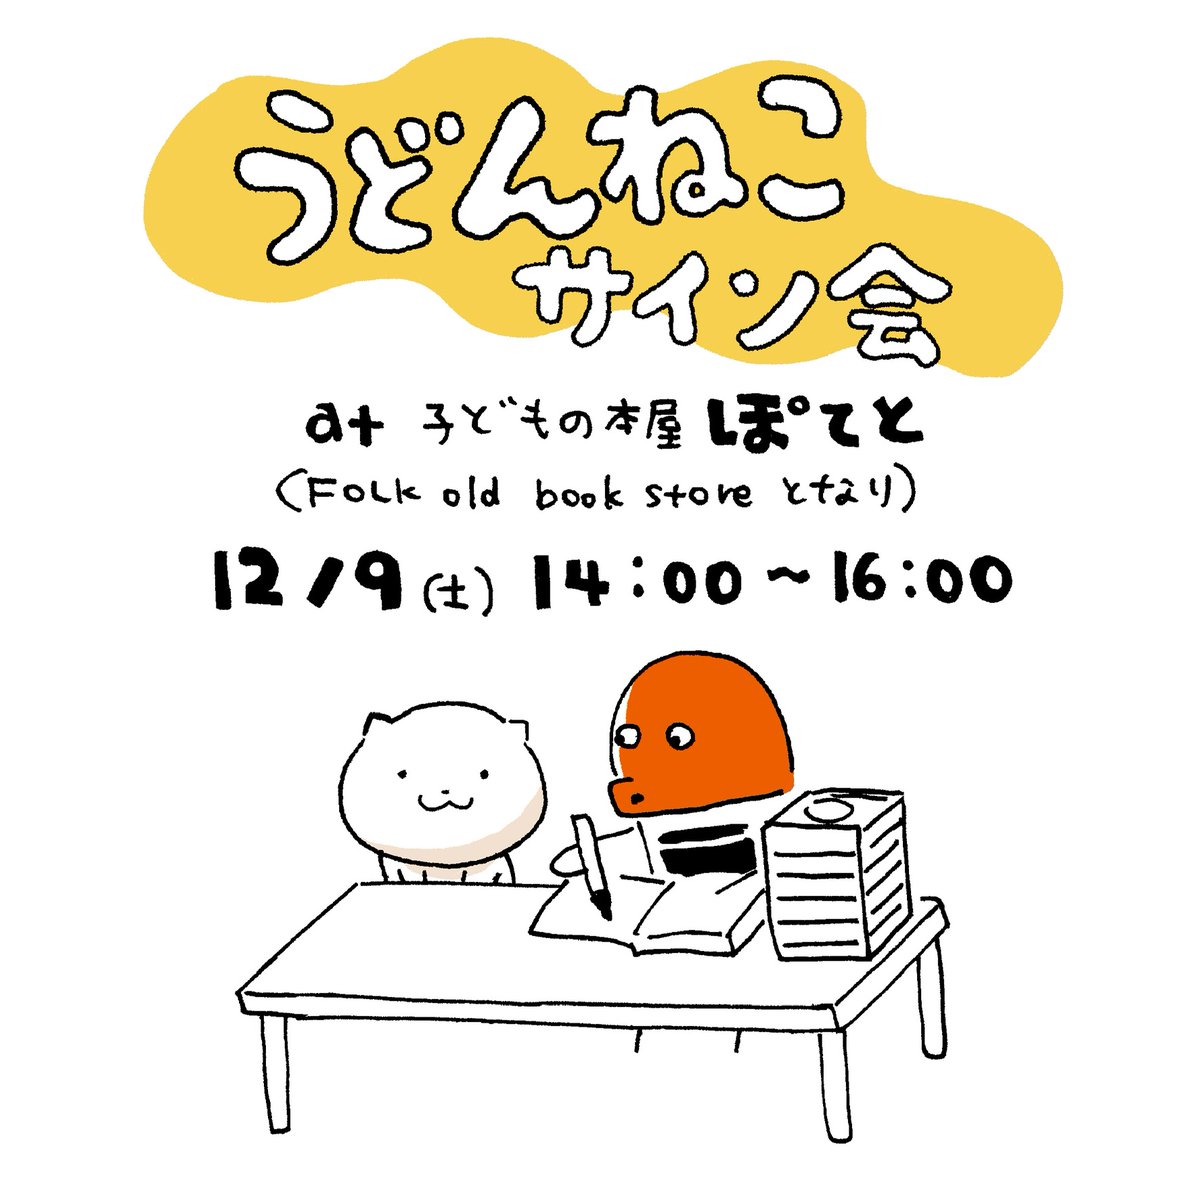 12/9(土) イベント2つあります!  12時〜13時過ぎは 大阪東教会での 「Tiny Holiday Market」に。素敵なお店がいっぱいです🎄  14時からは子どもの本屋ぽてとでサイン会です。会場近いのでぜひハシゴしてください🥔